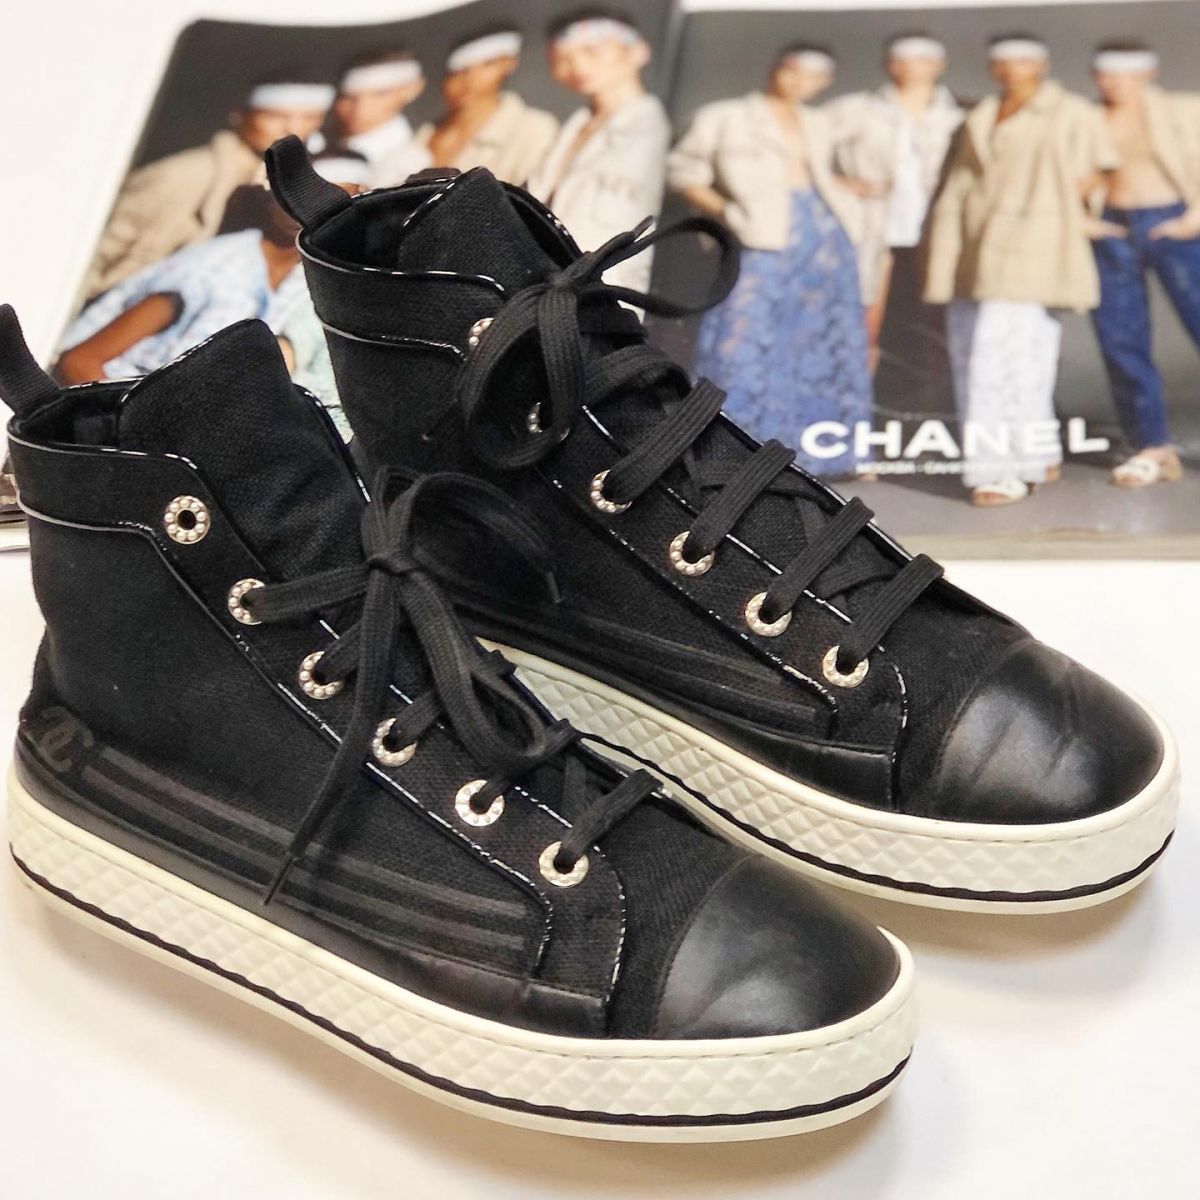 Кеды Chanel  размер 39.5 цена 30 770 руб 